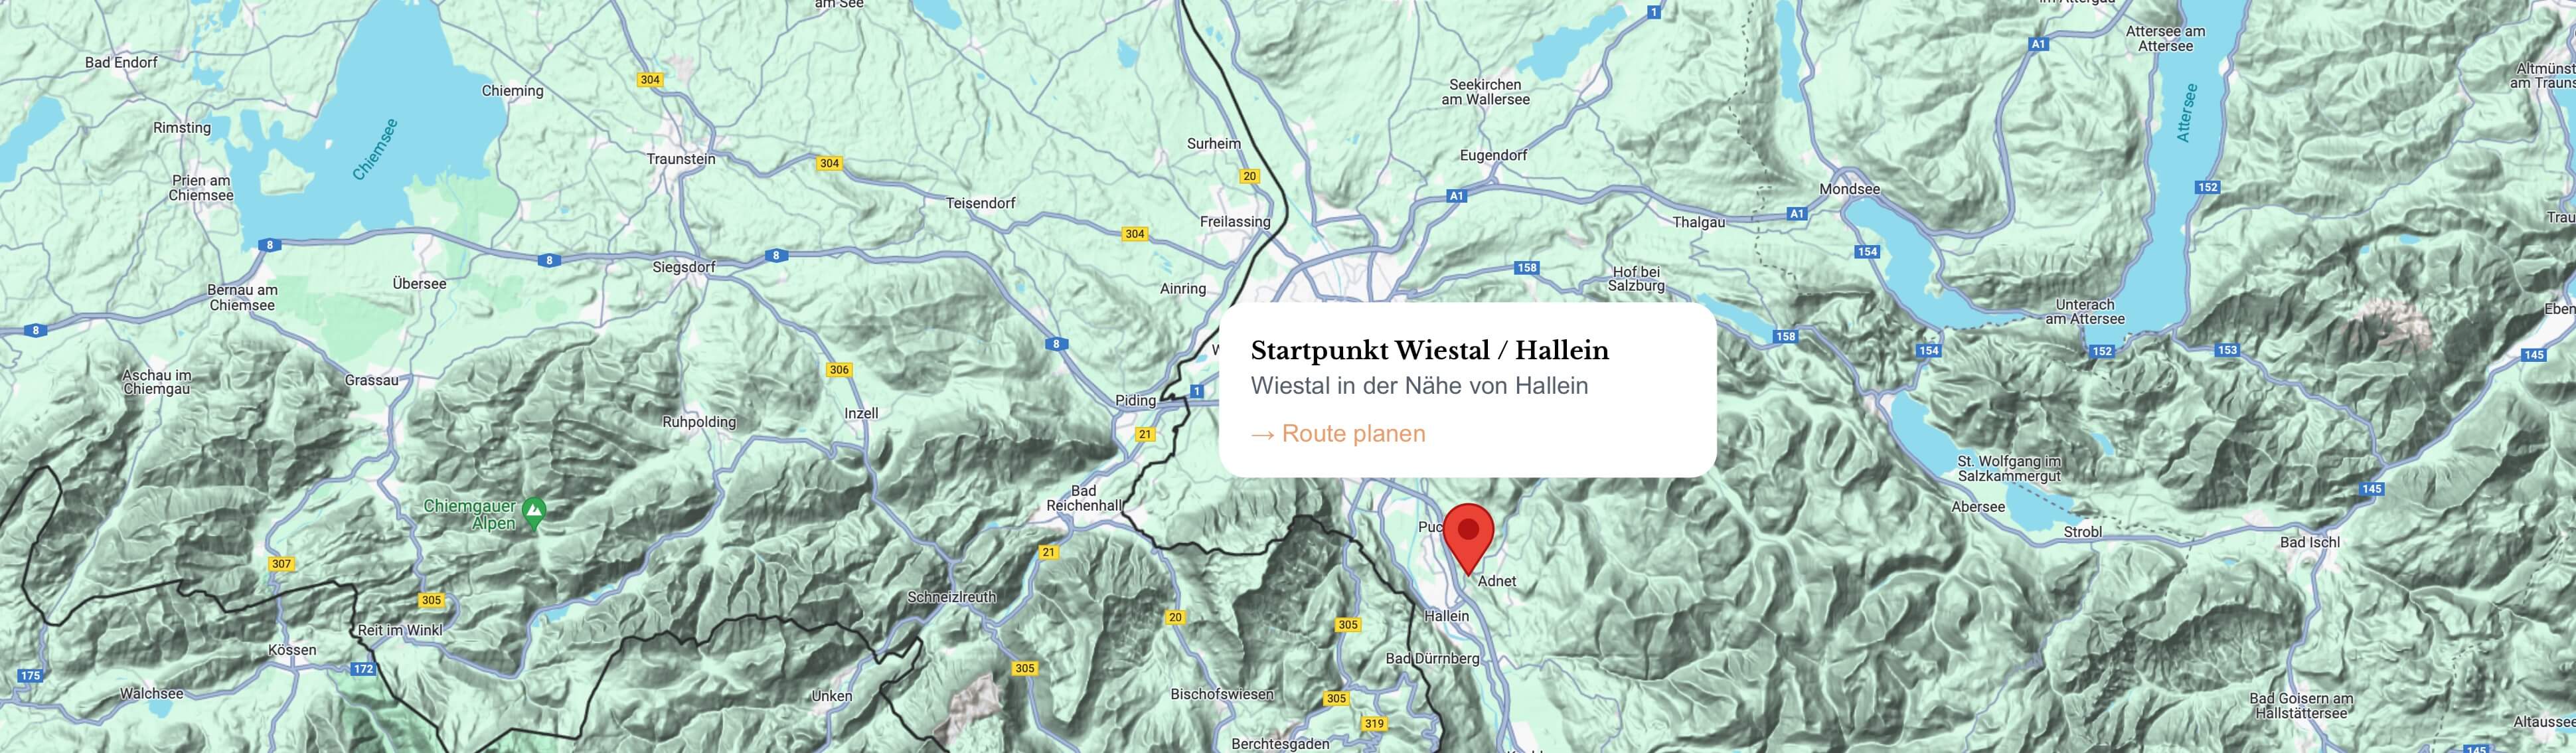 Startpunkt Wiestal / Hallein